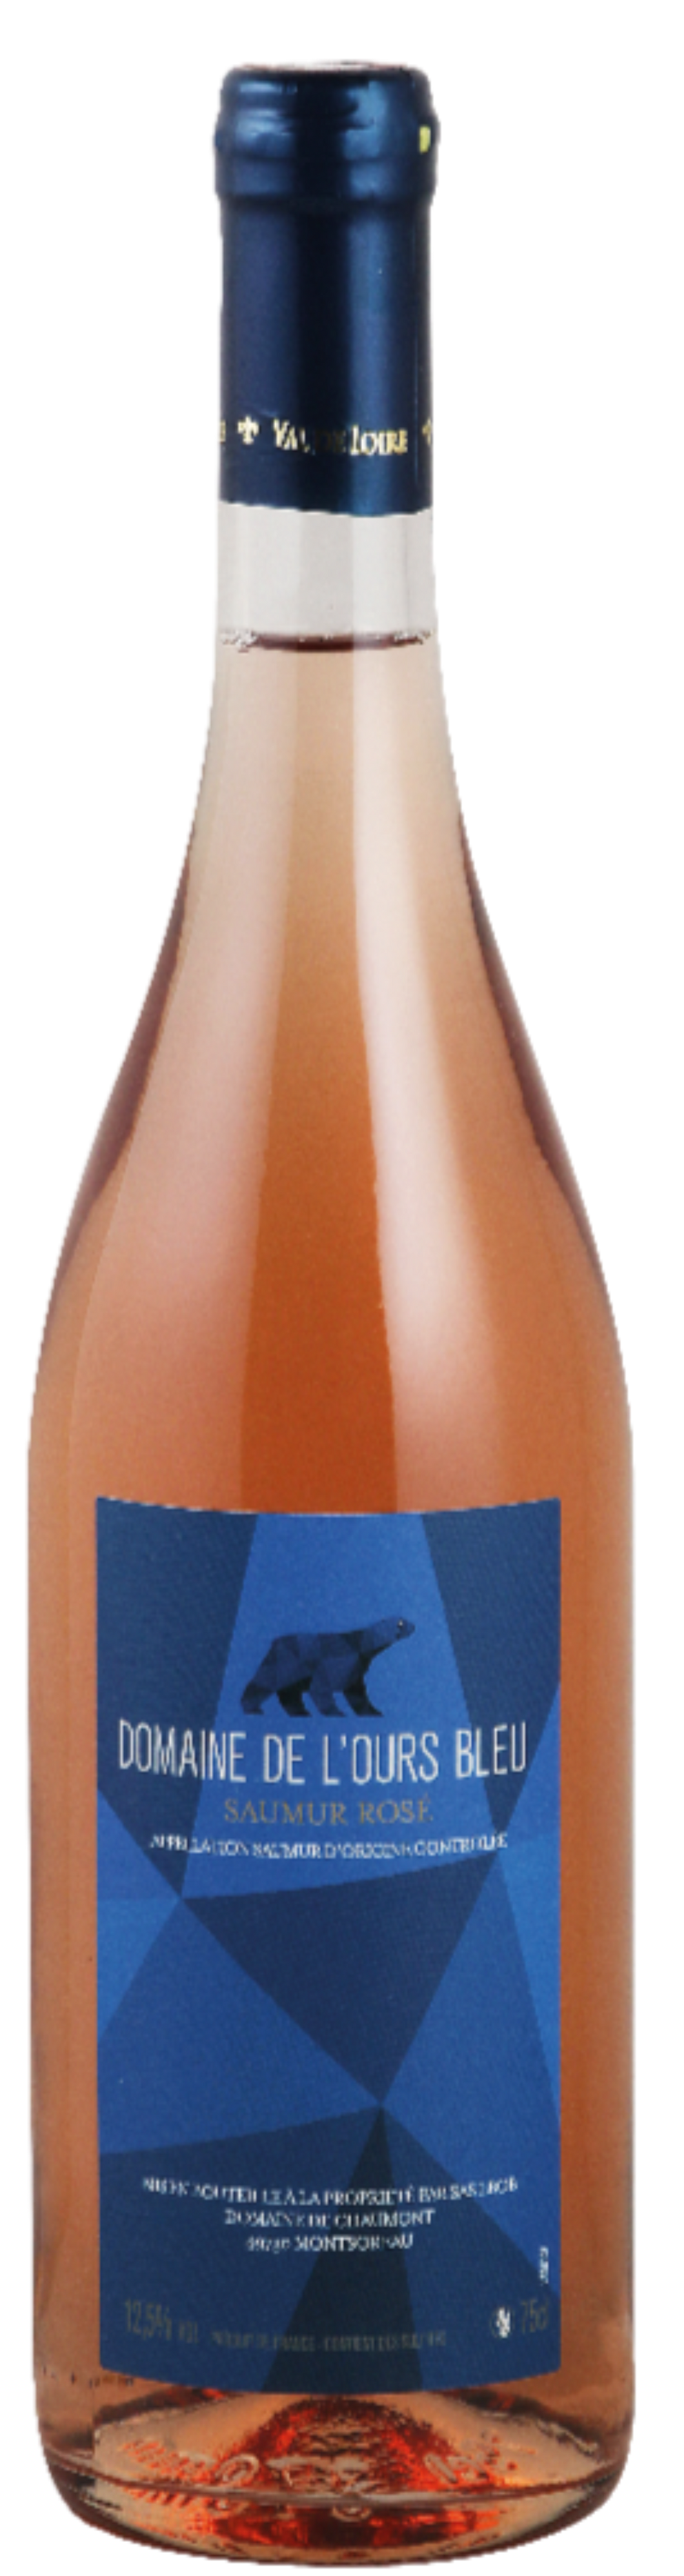 Vin saumur rosé 2020 | Domaine de l'Ours Bleu